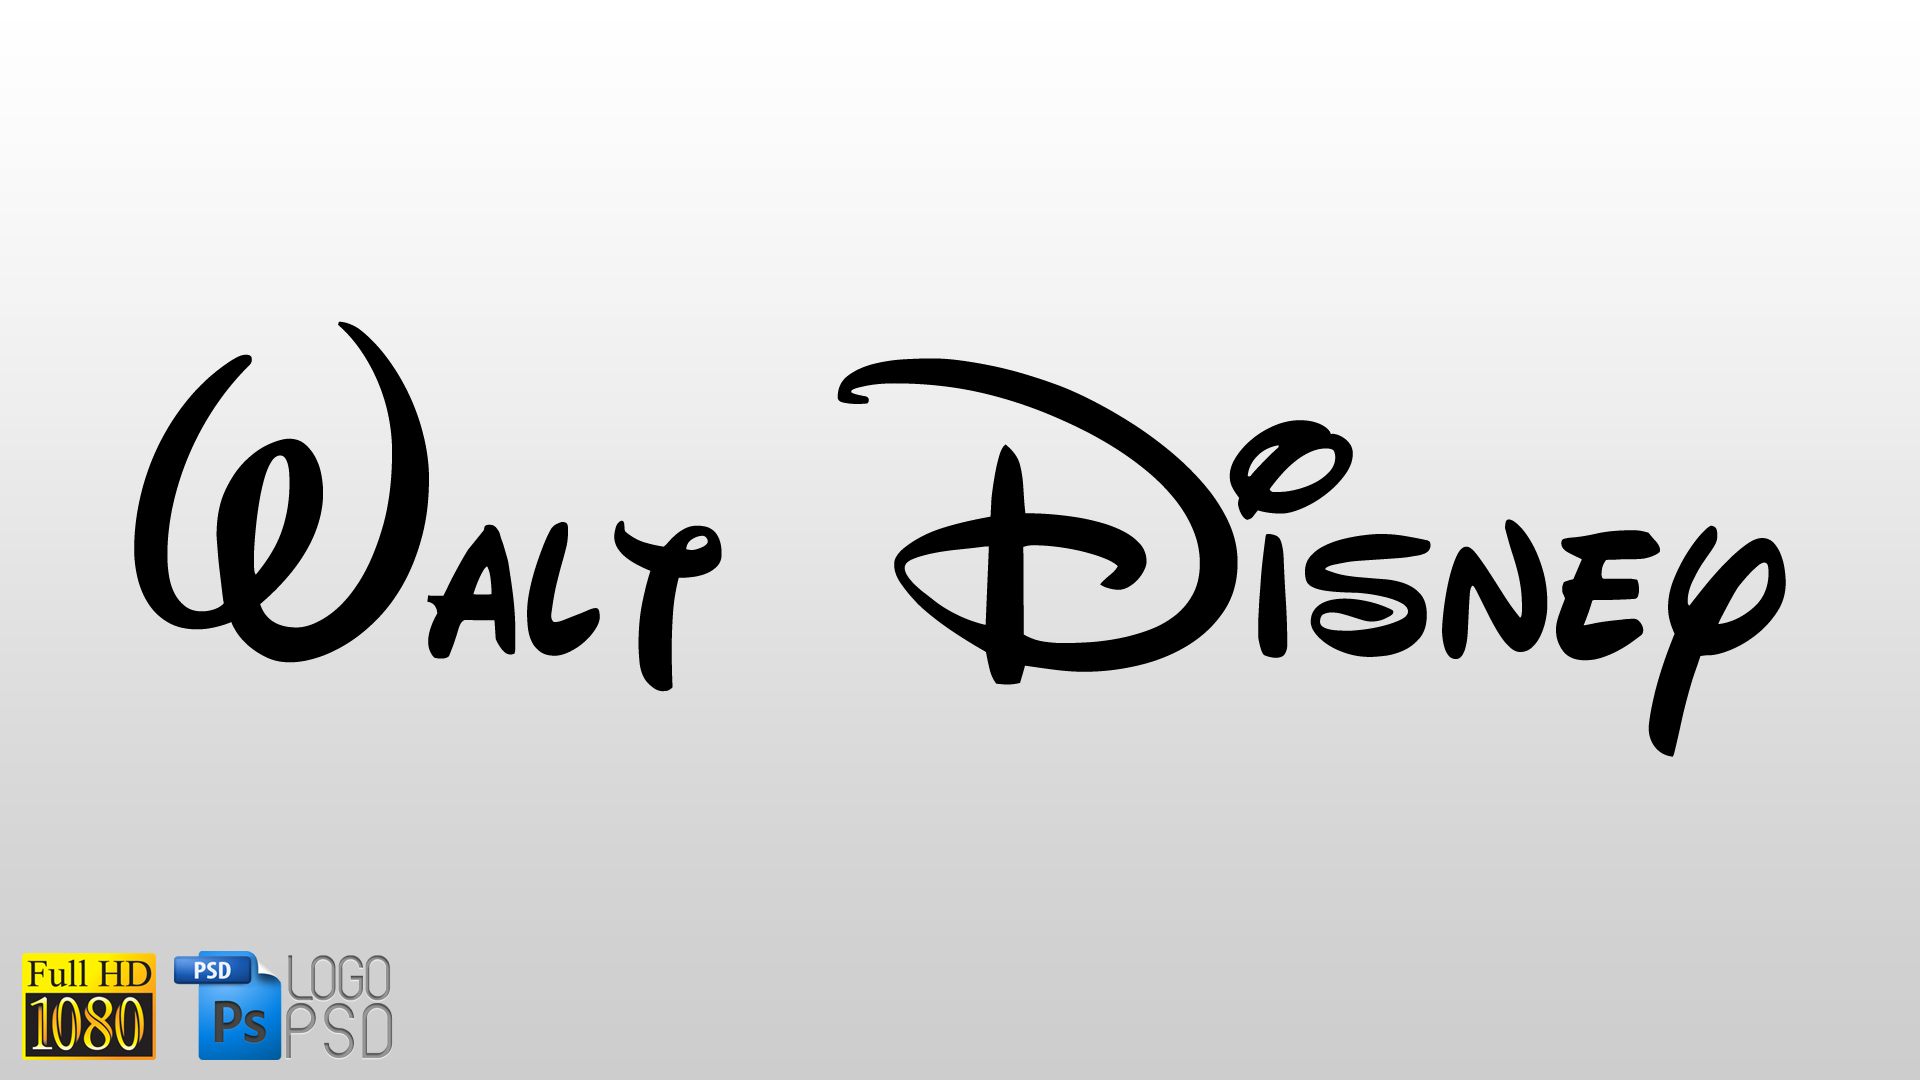 Walt Disney Logo PSD by iampxr